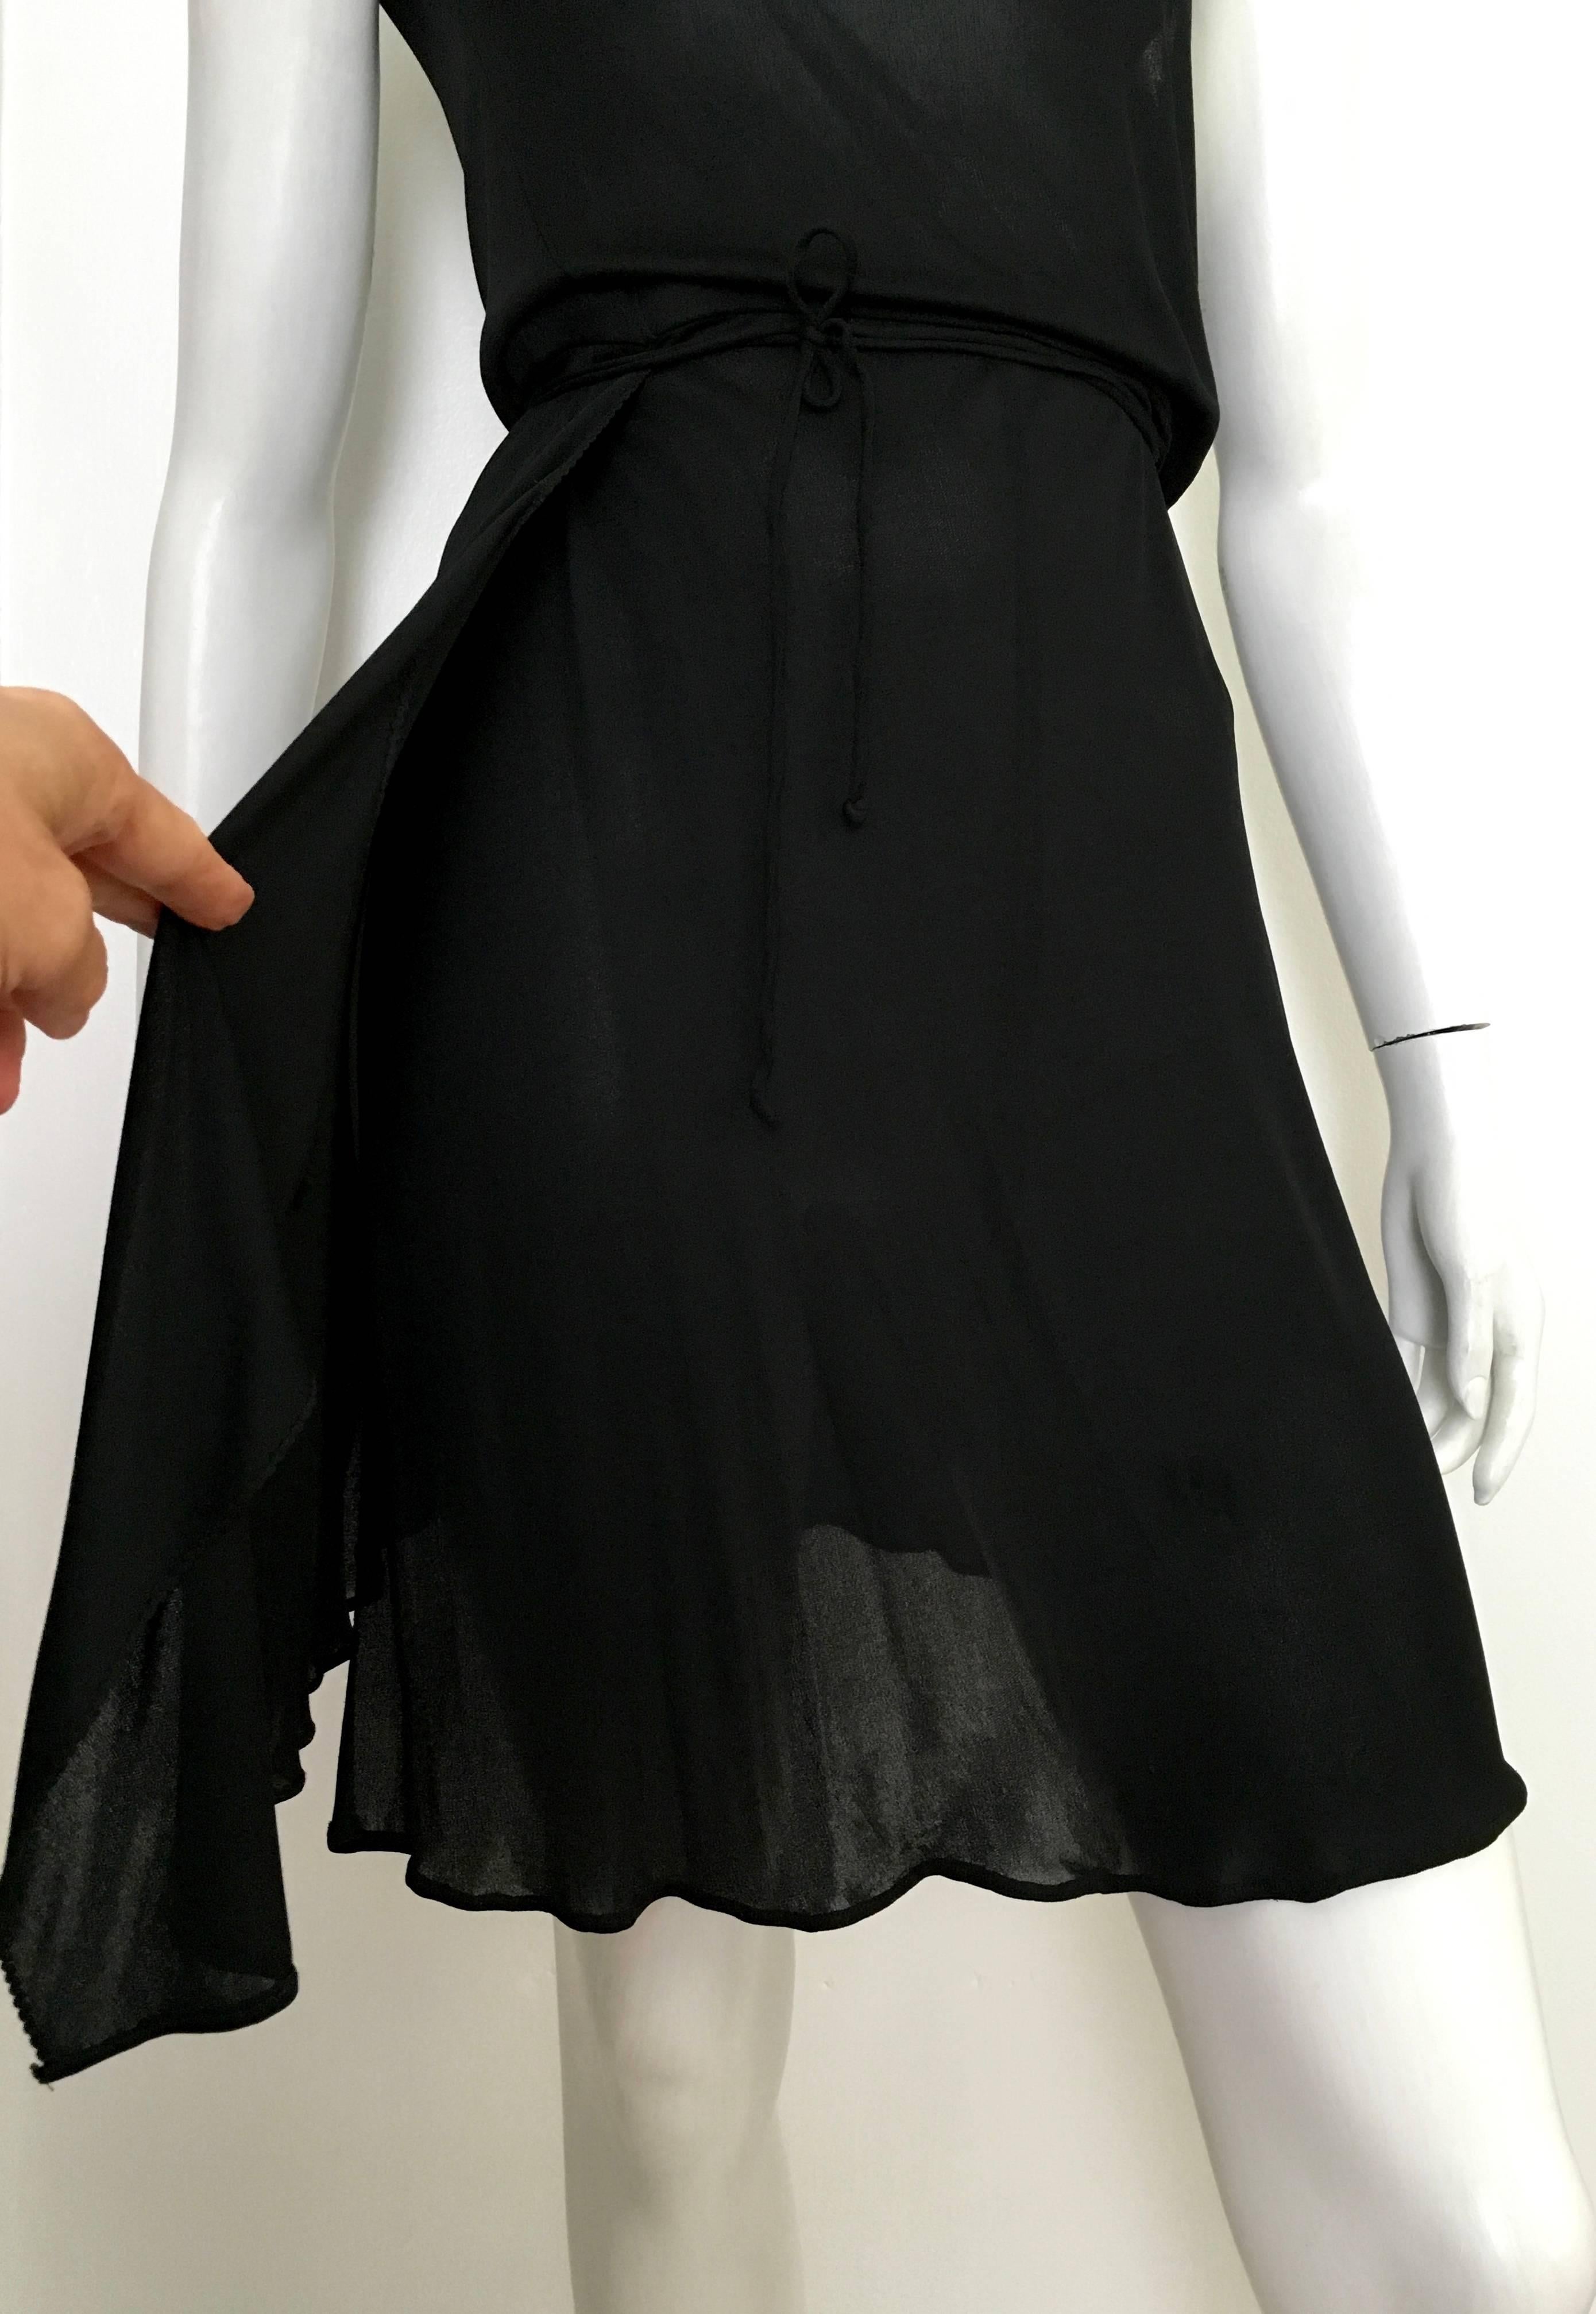 Gray Stephen Burrows for Henri Bendel Black Jersey One Shoulder Dress Size 4/6. For Sale